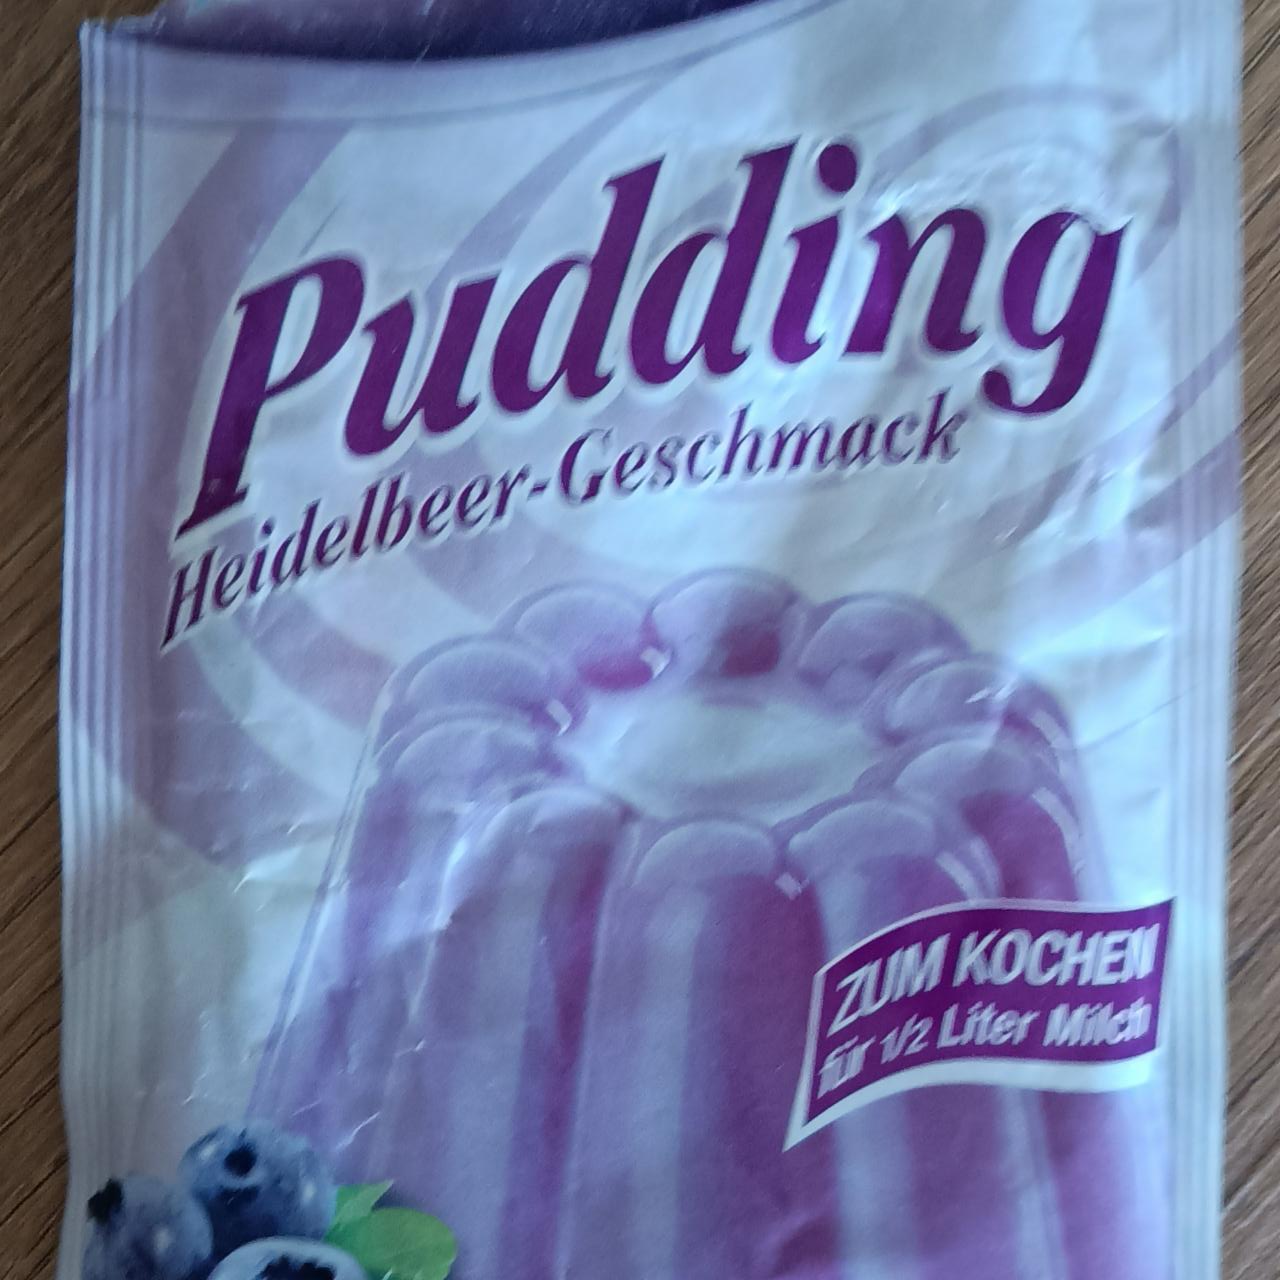 Fotografie - Pudding Heidelbeer-Geschmack Komet